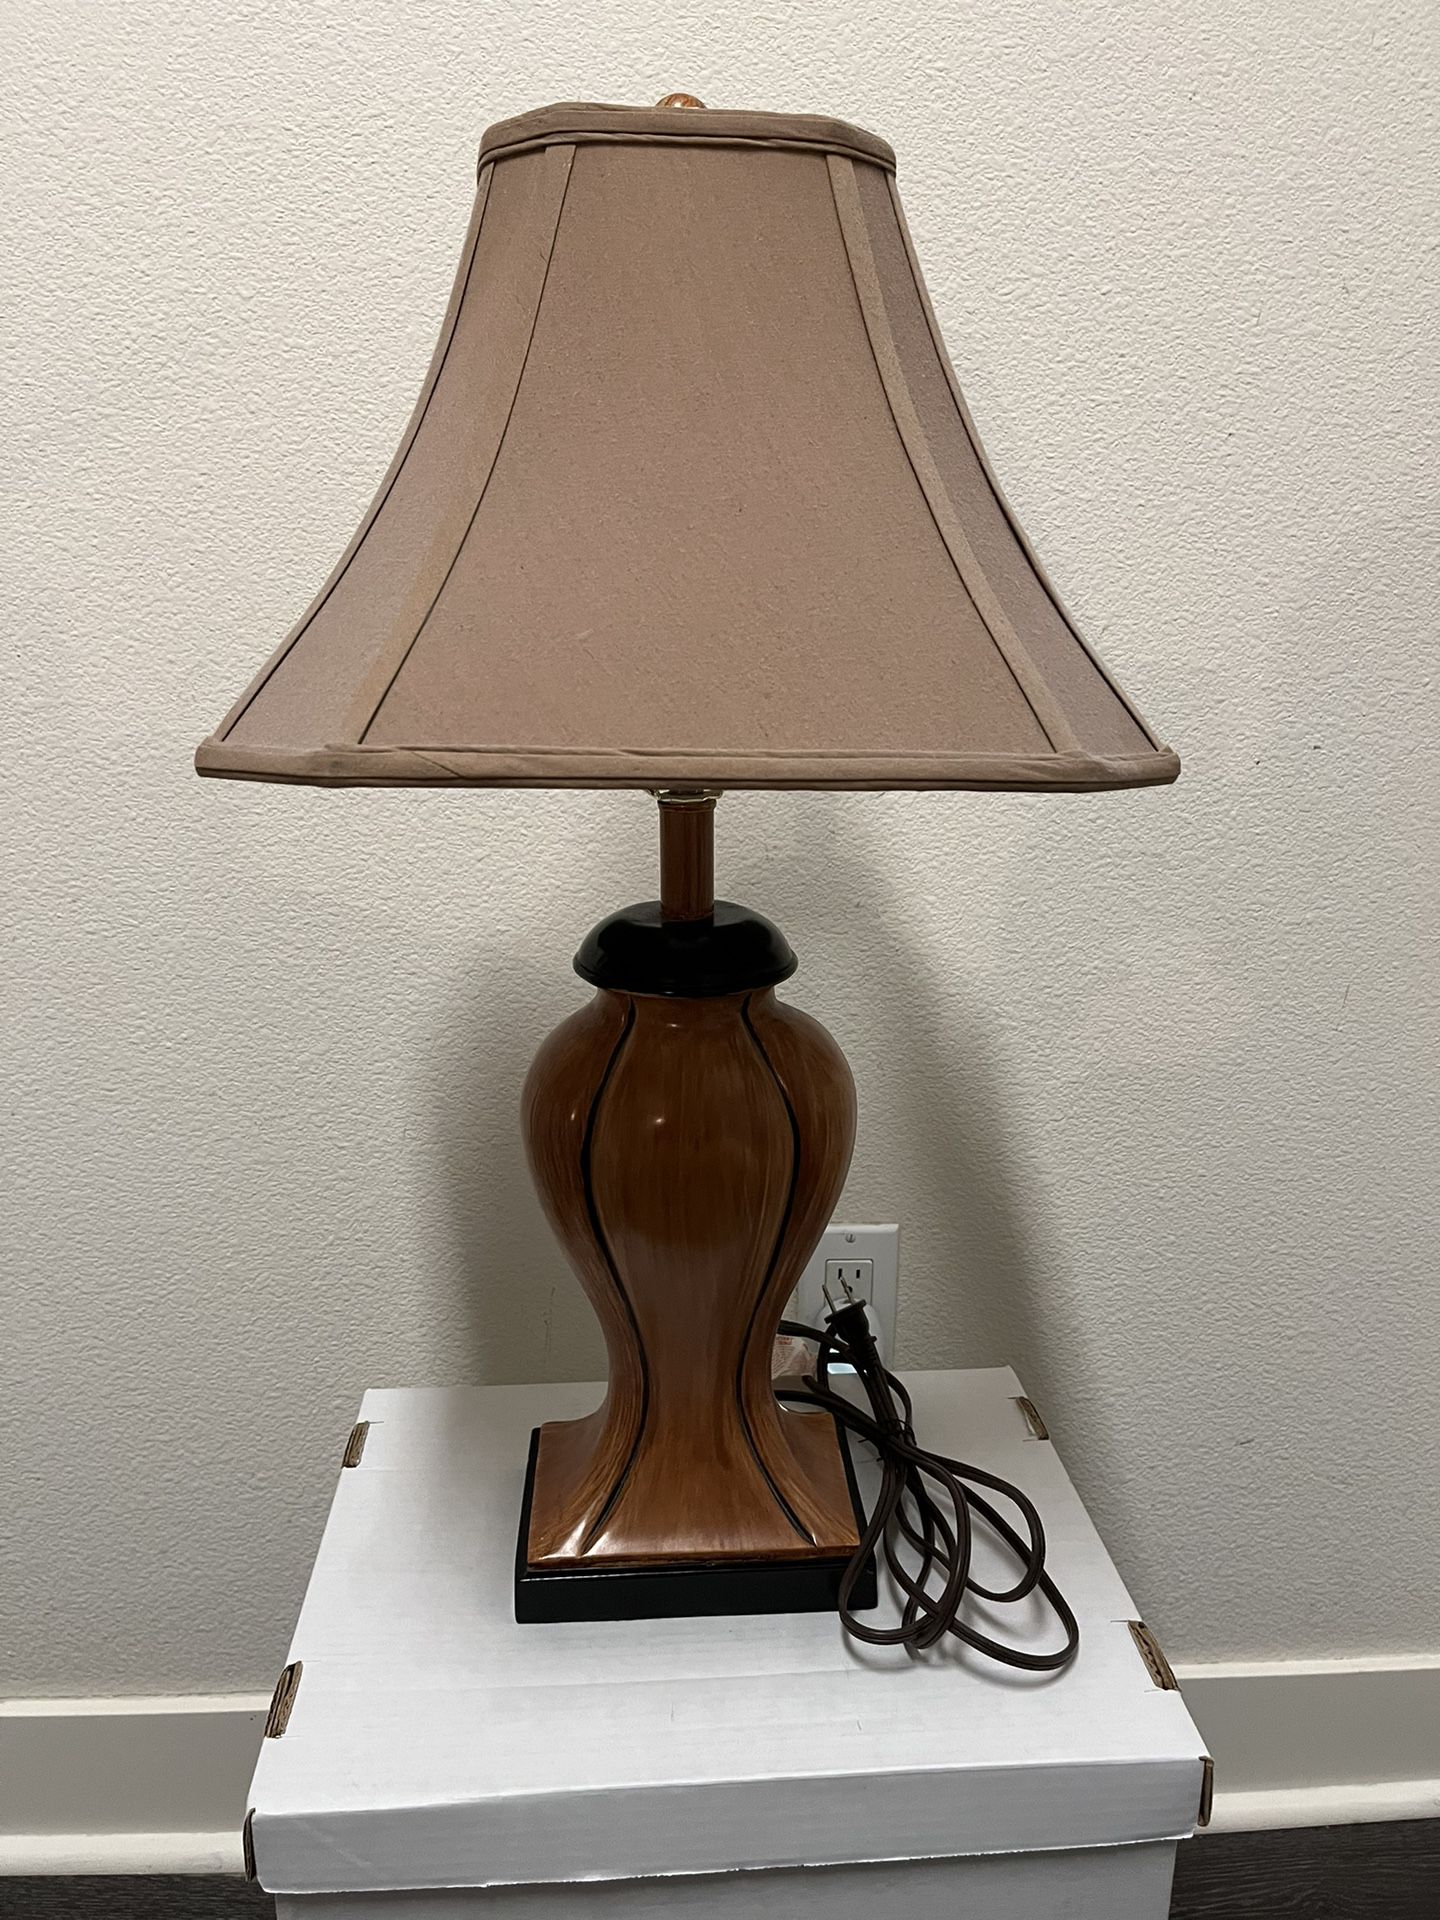 Table - Lamp  - Lightbulb Included   26”